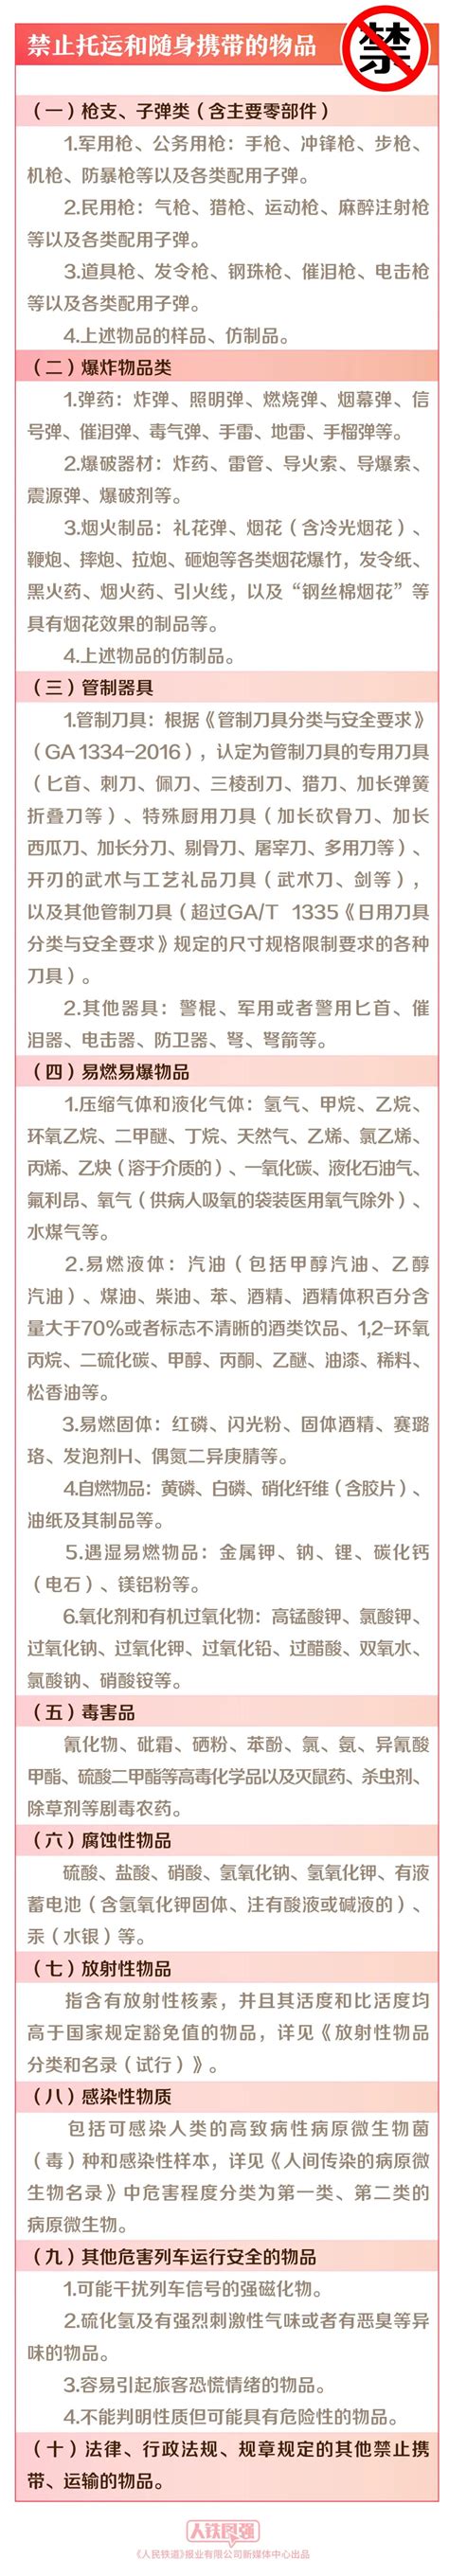 长春轨道交通发布“最严禁令”! 这些物品禁止携带-中国吉林网